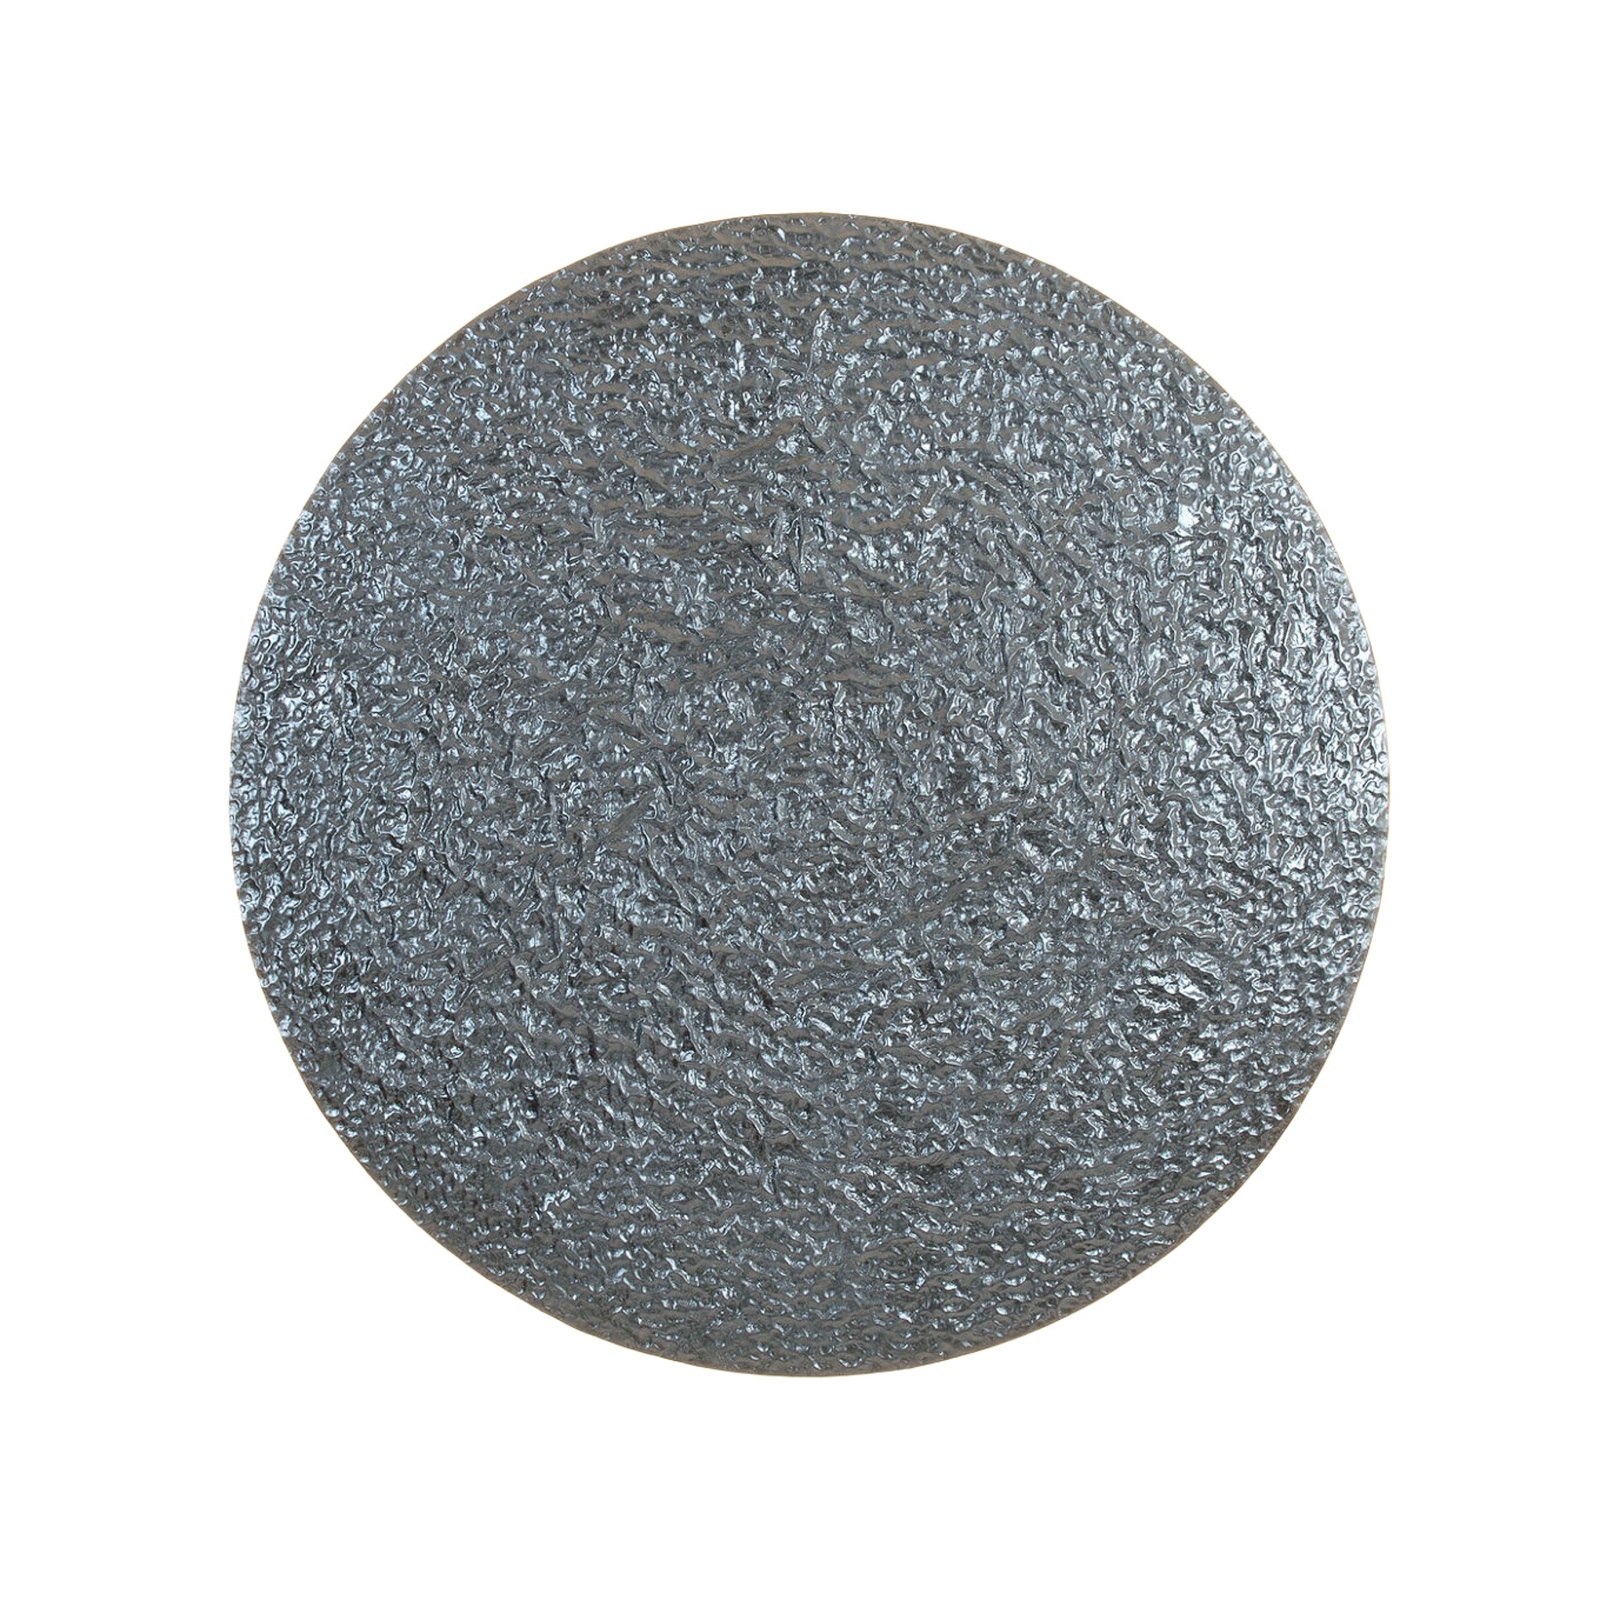 LED-seinävalaisin Meteor, hopeanvärinen, Ø 100 cm, rautaa